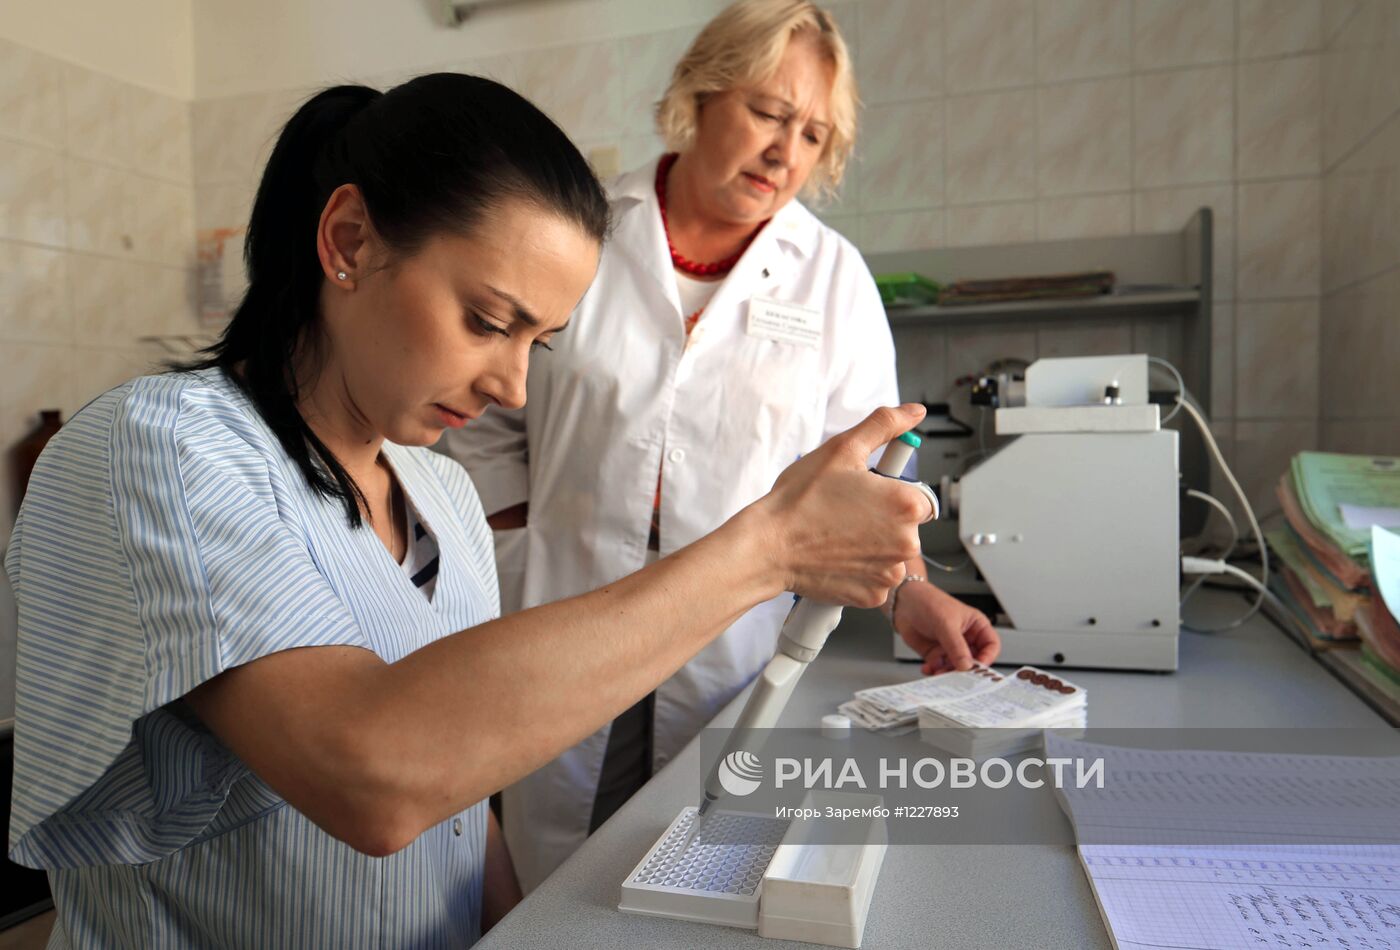 Работа центра планирования семьи и репродукции в Калининграде